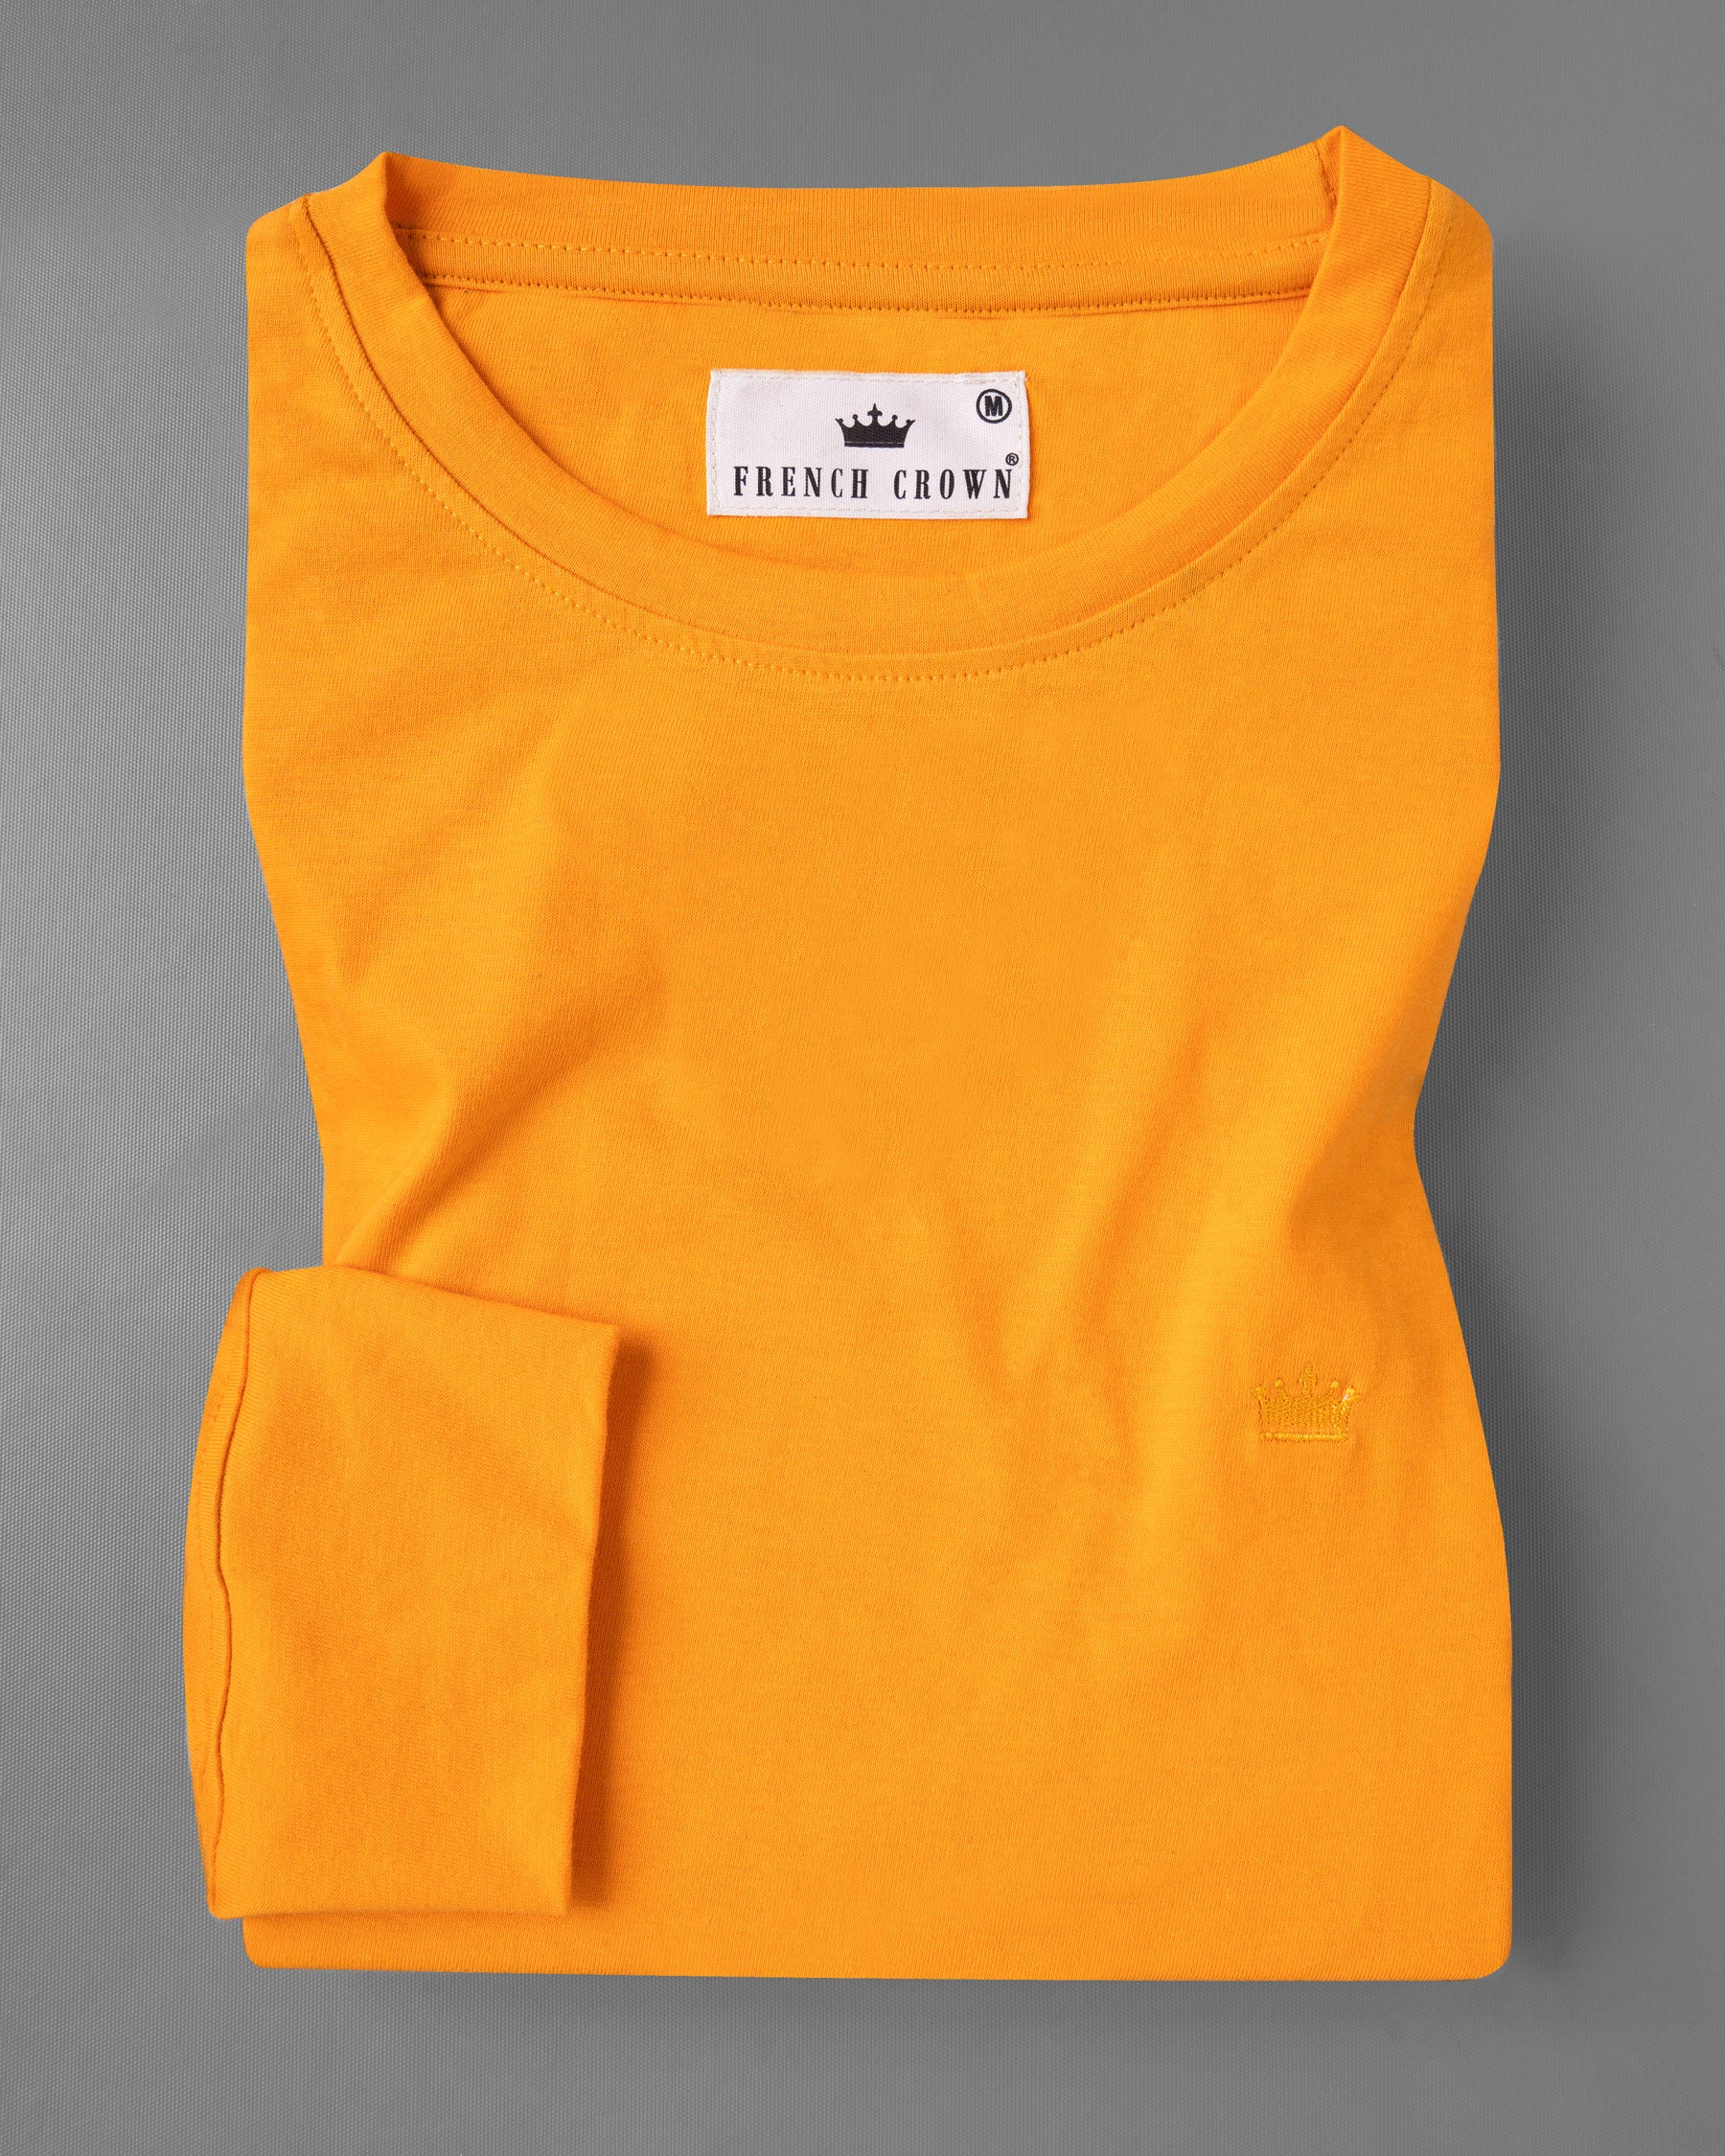 Tree Poppy Orange Full Sleeve Premium Cotton Jersey Sweatshirt TS493-S, TS493-M, TS493-L, TS493-XL, TS493-XXL